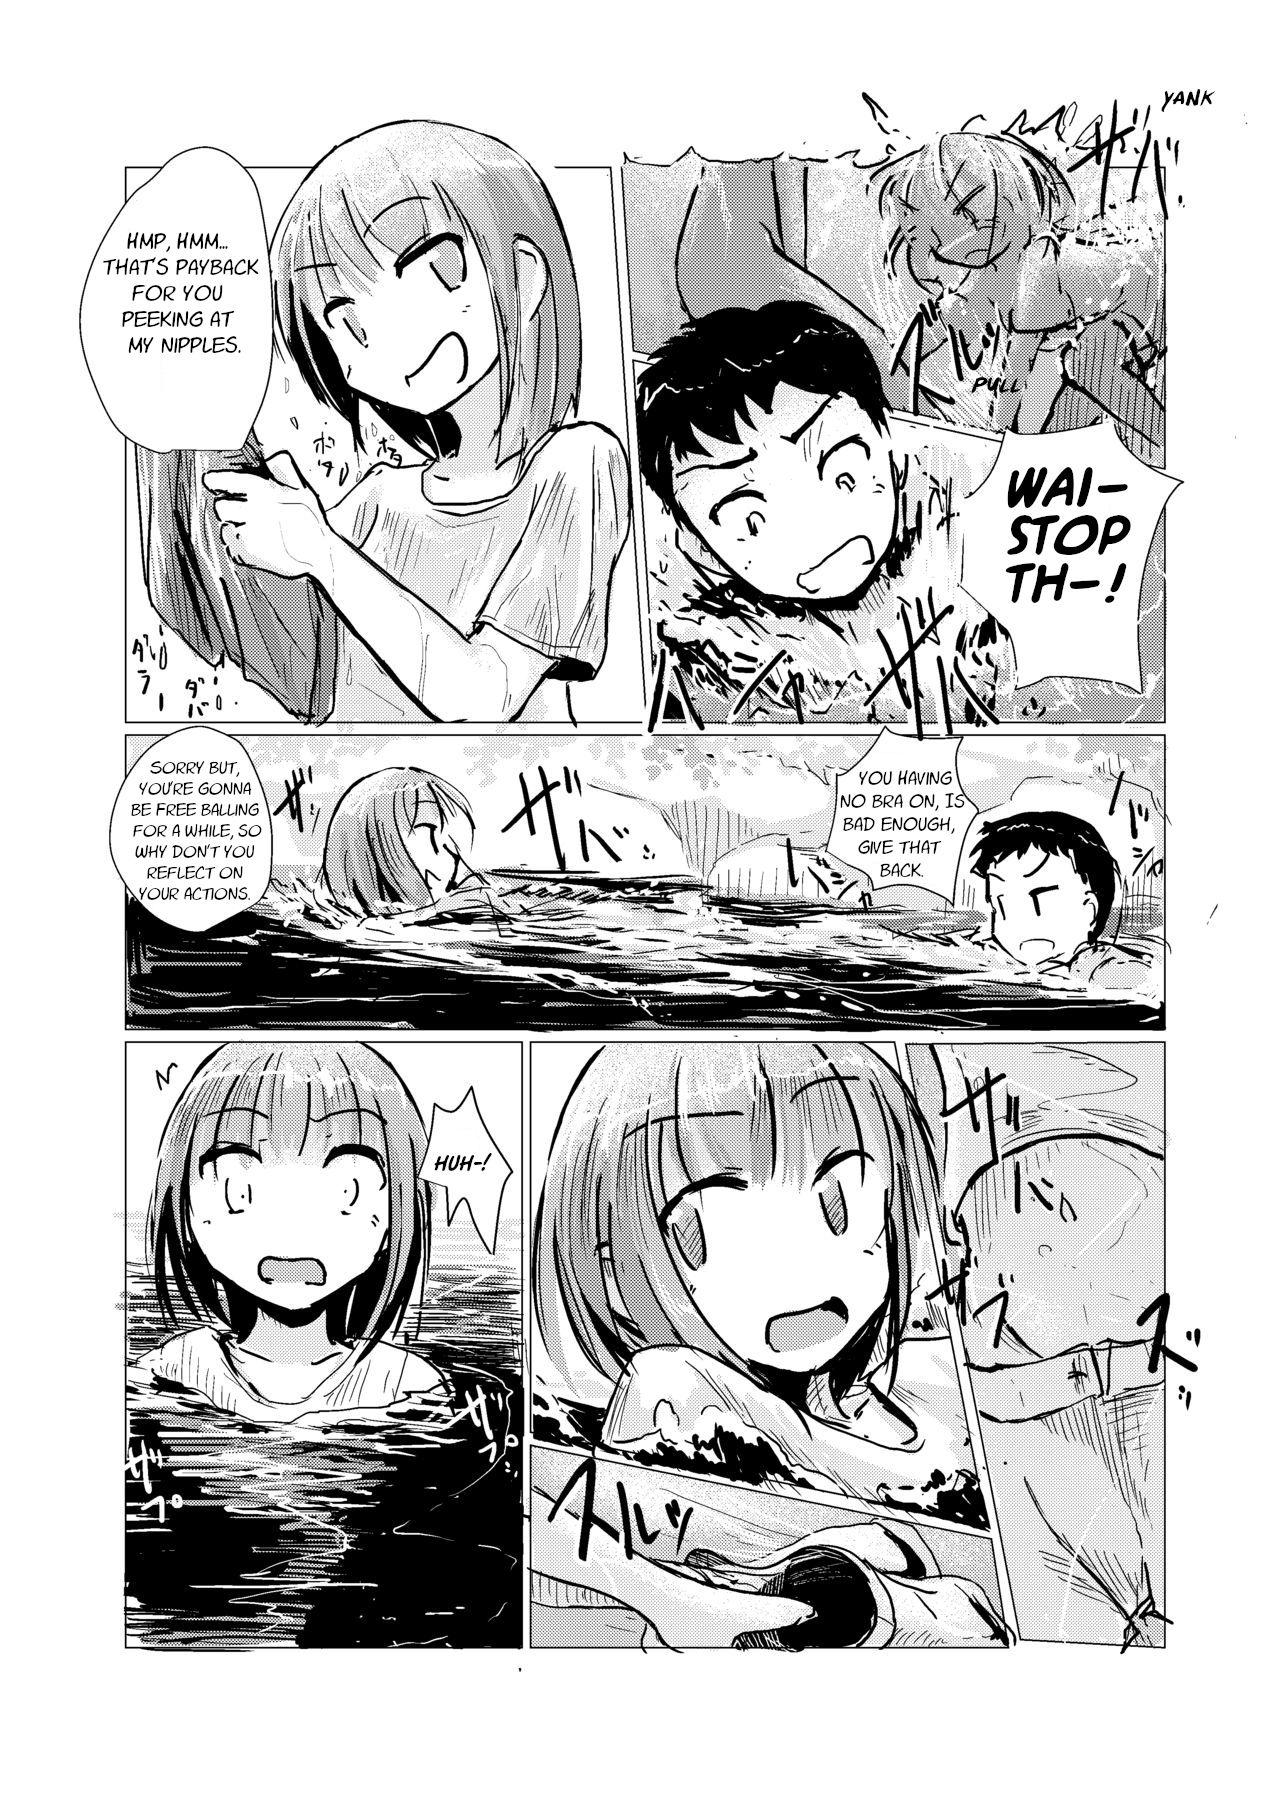 Screaming Futari de Mizuasobi・Two People Playing In The River Woman - Page 9